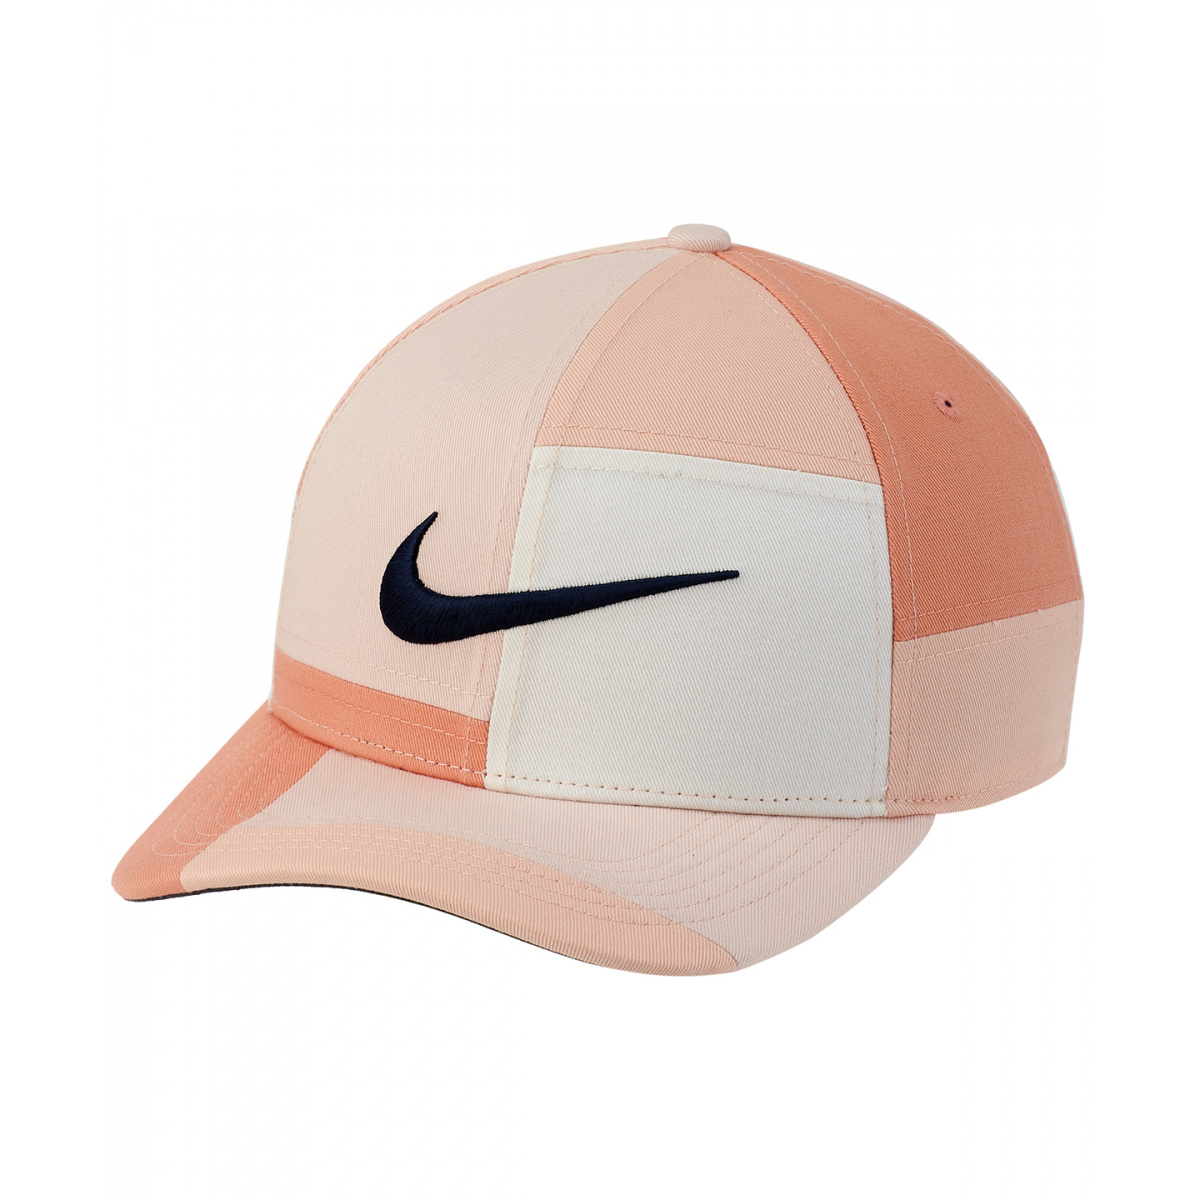 Chapeaux et Casquettes pour Homme Nike - Achat / Vente pas cher